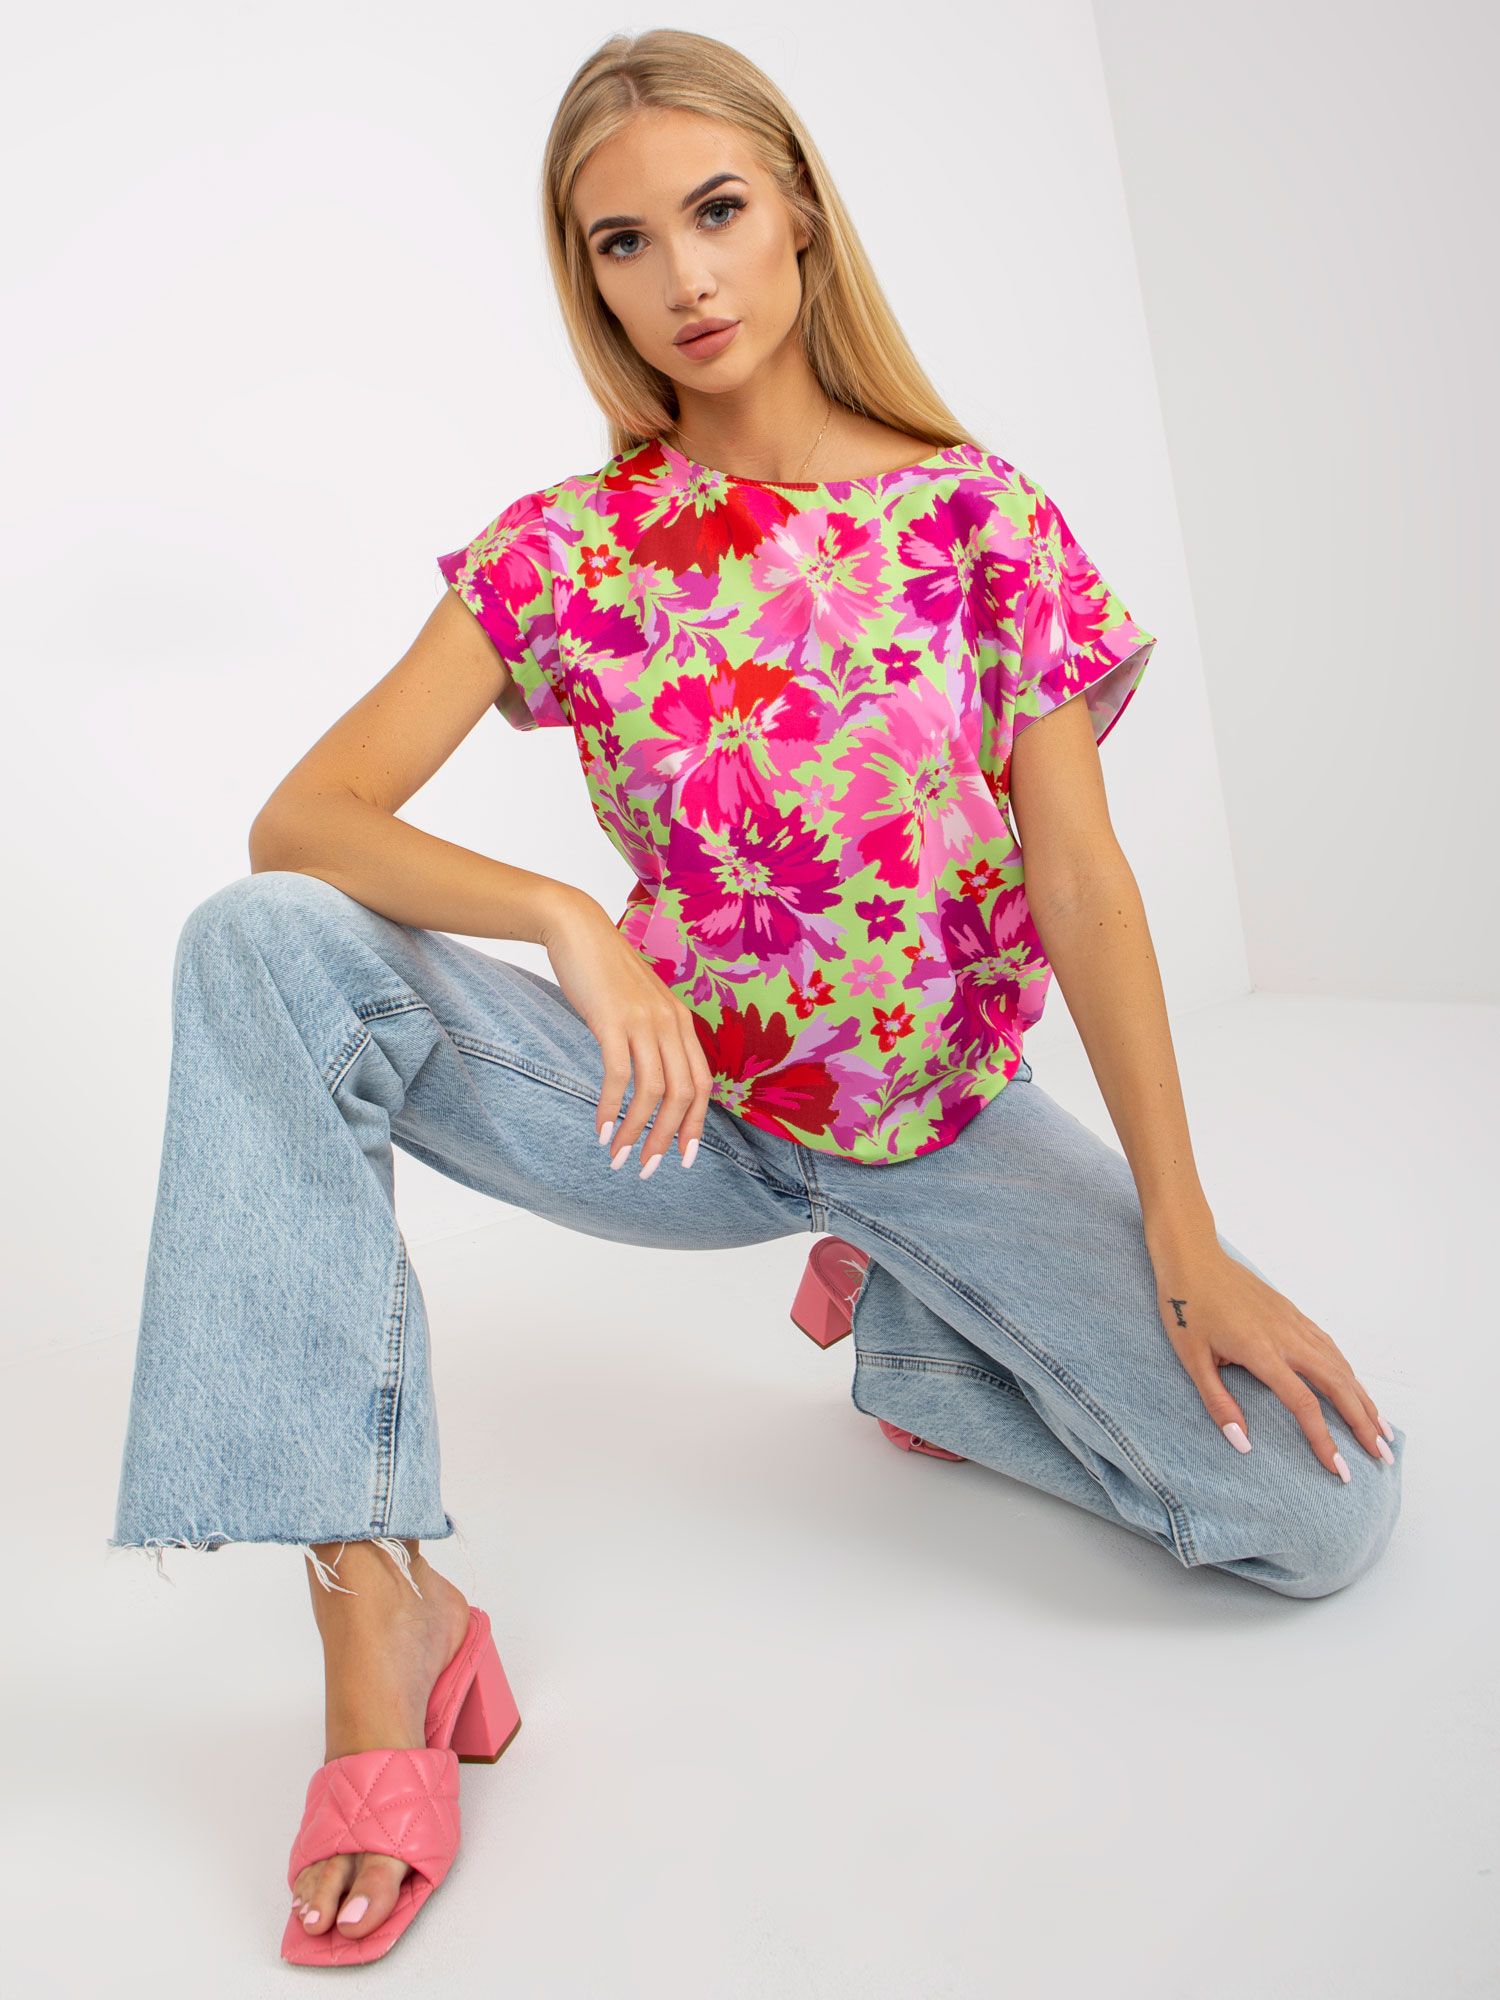 Floral blouses plus jeans looks